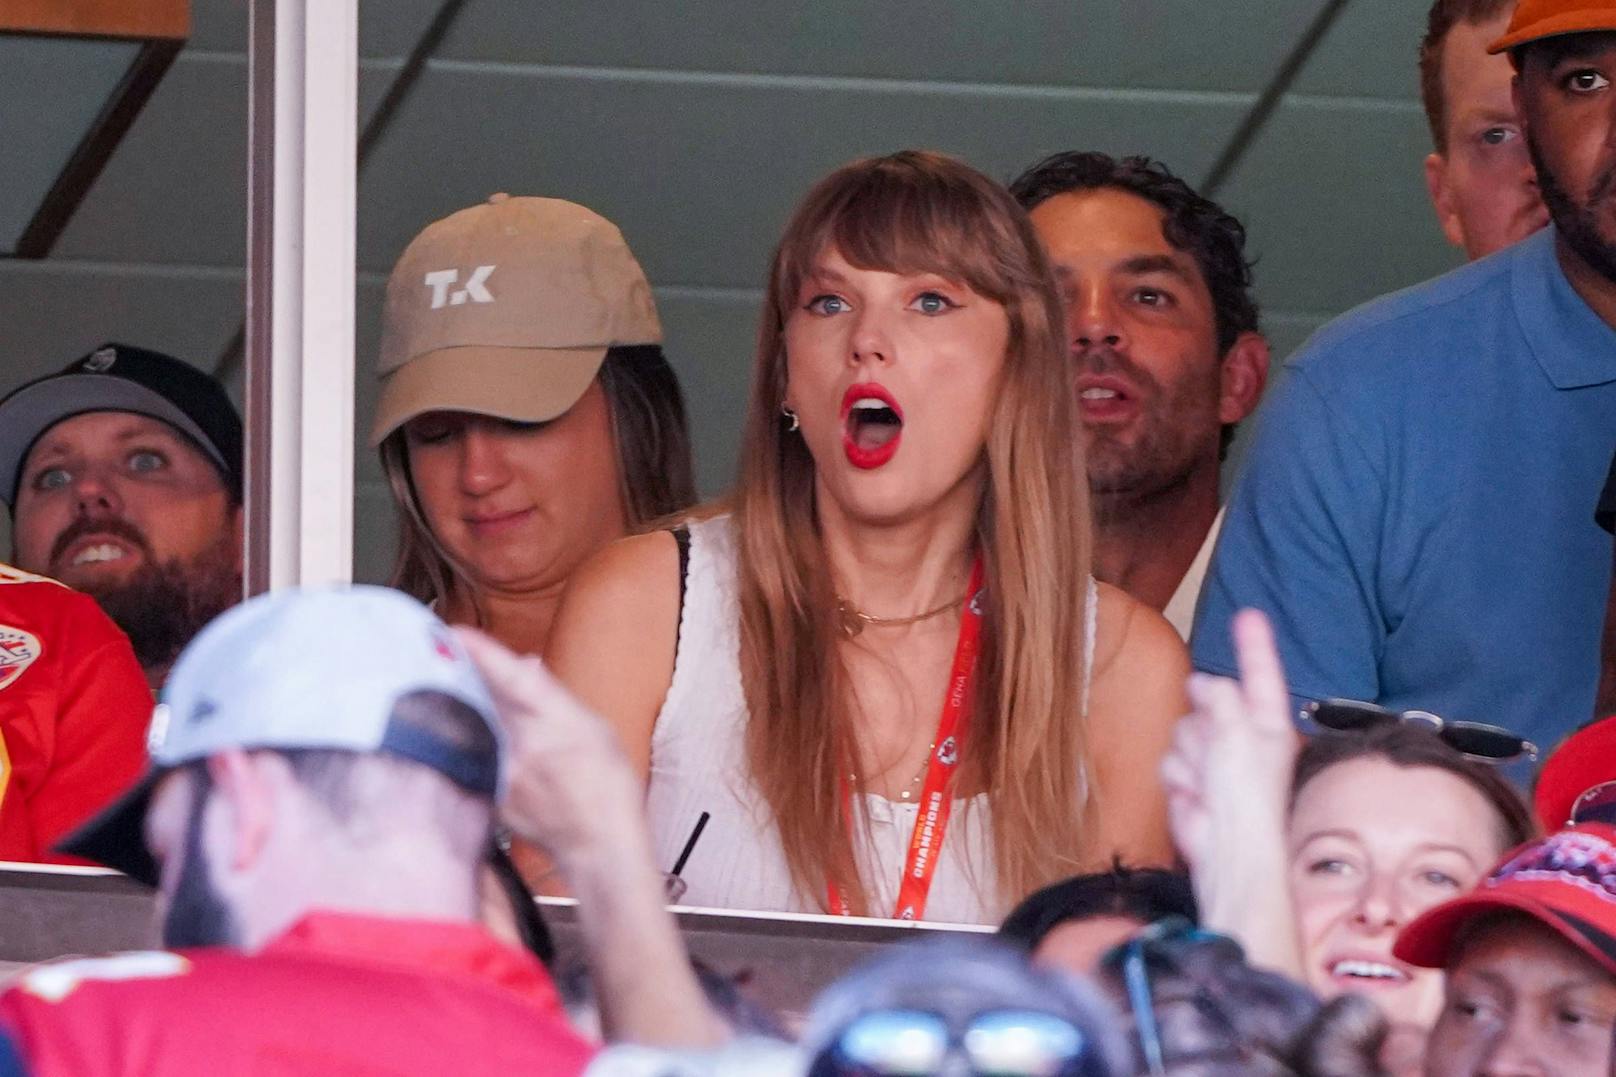 Über Taylor Swifts Liebesleben wird wieder wild spekuliert. Bevor ihre Beziehung bestätigt wurde, sah man sie öfter bei Spielen des NFL-Sportlers.